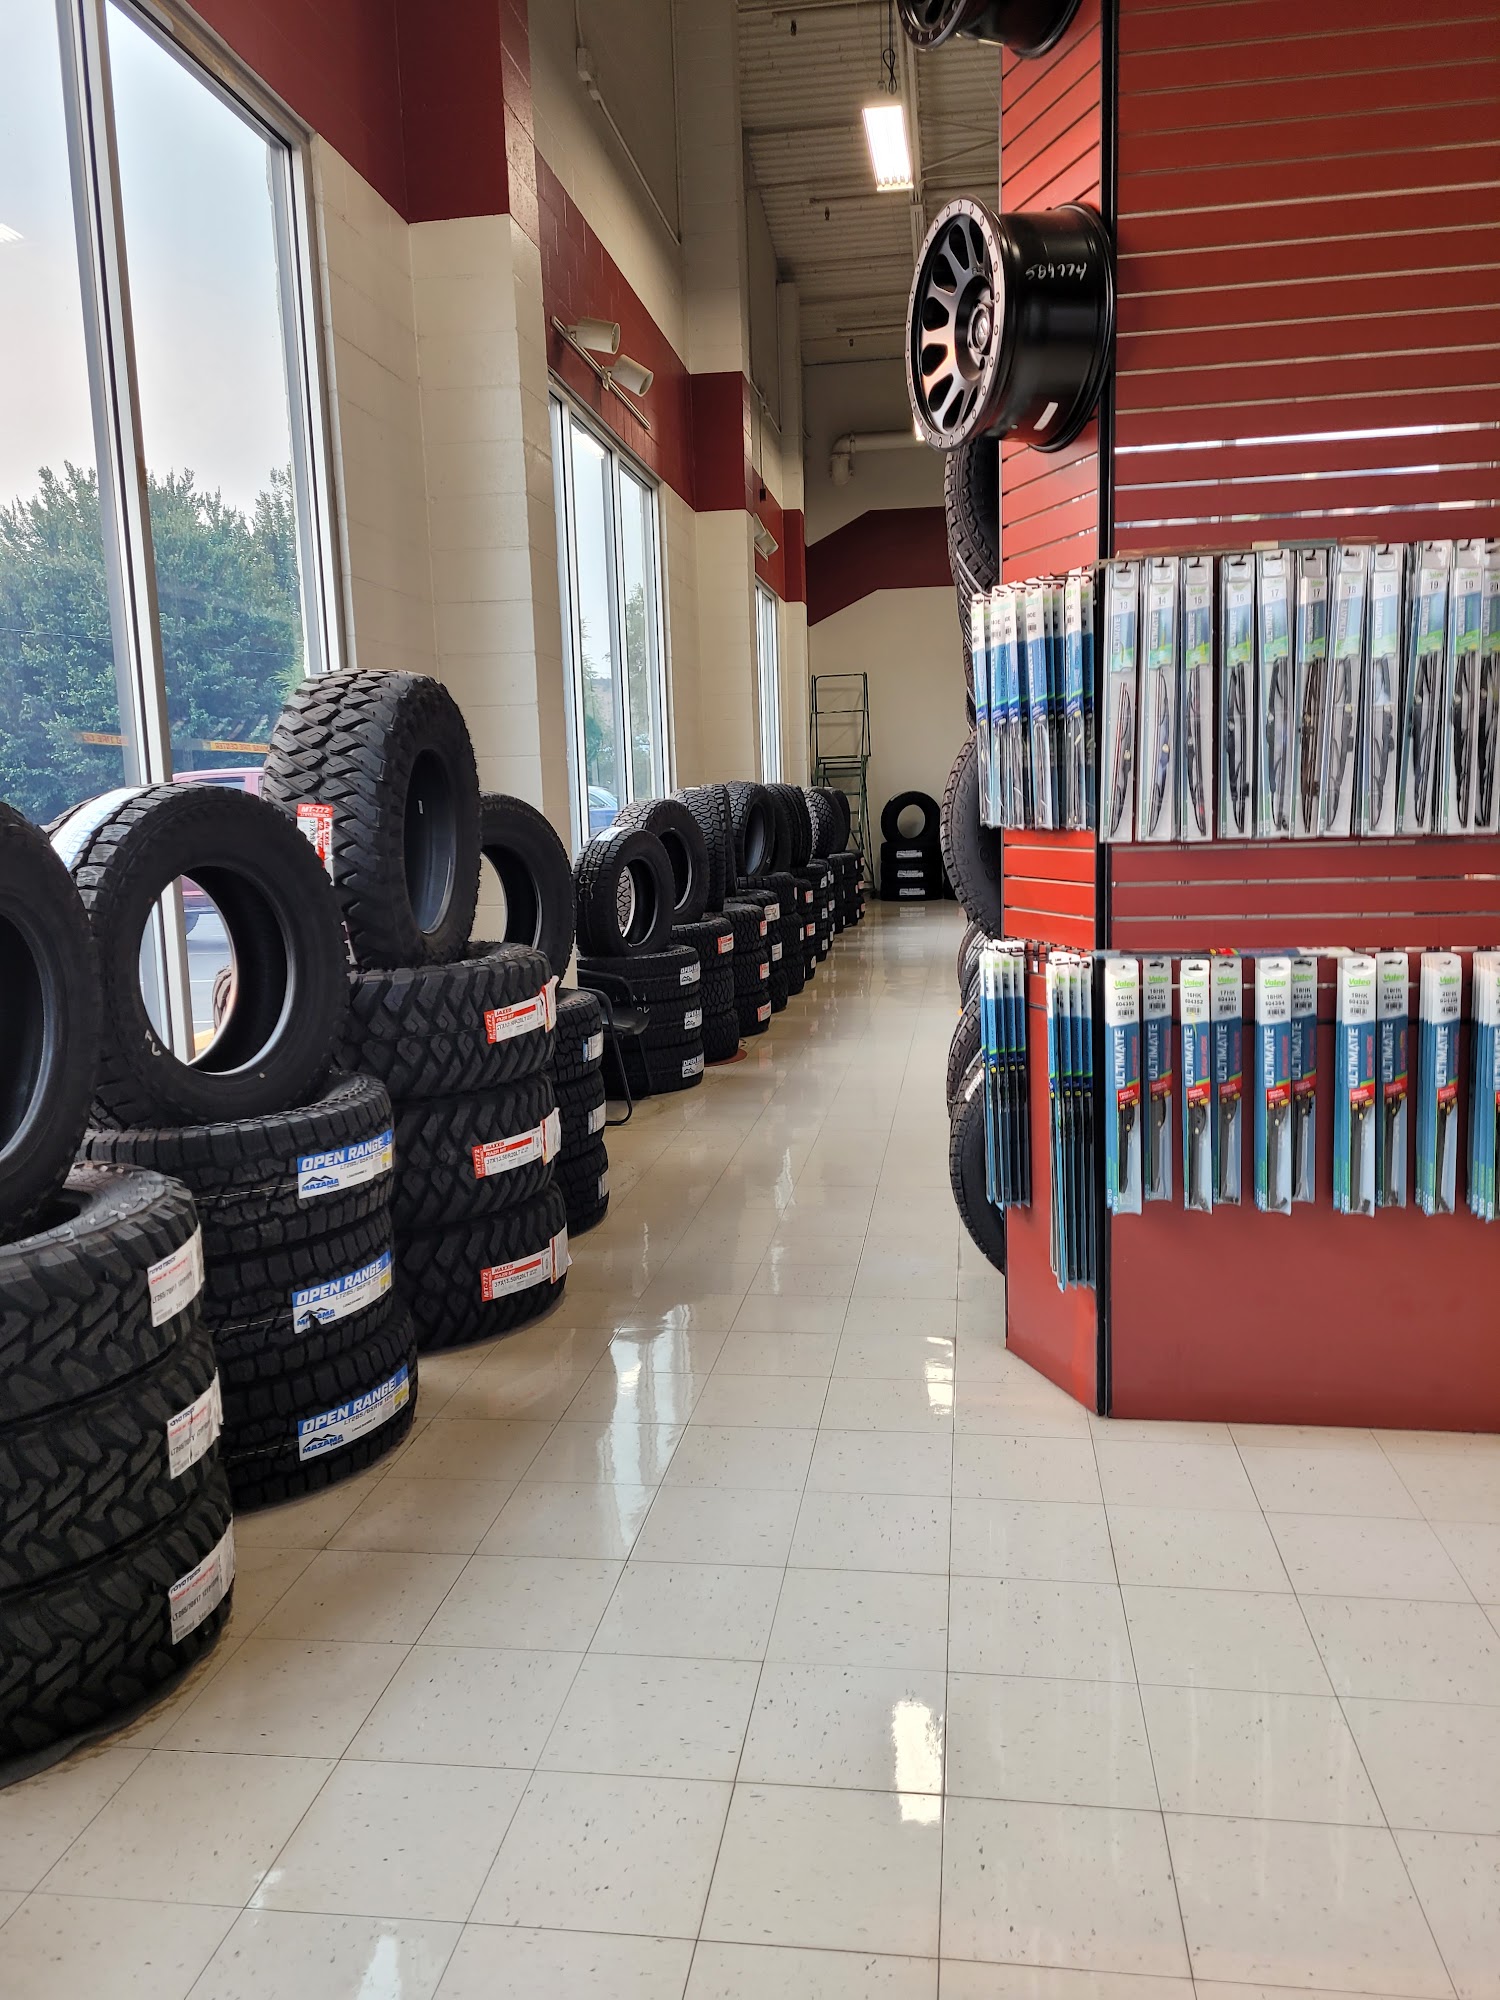 Les Schwab Tire Center